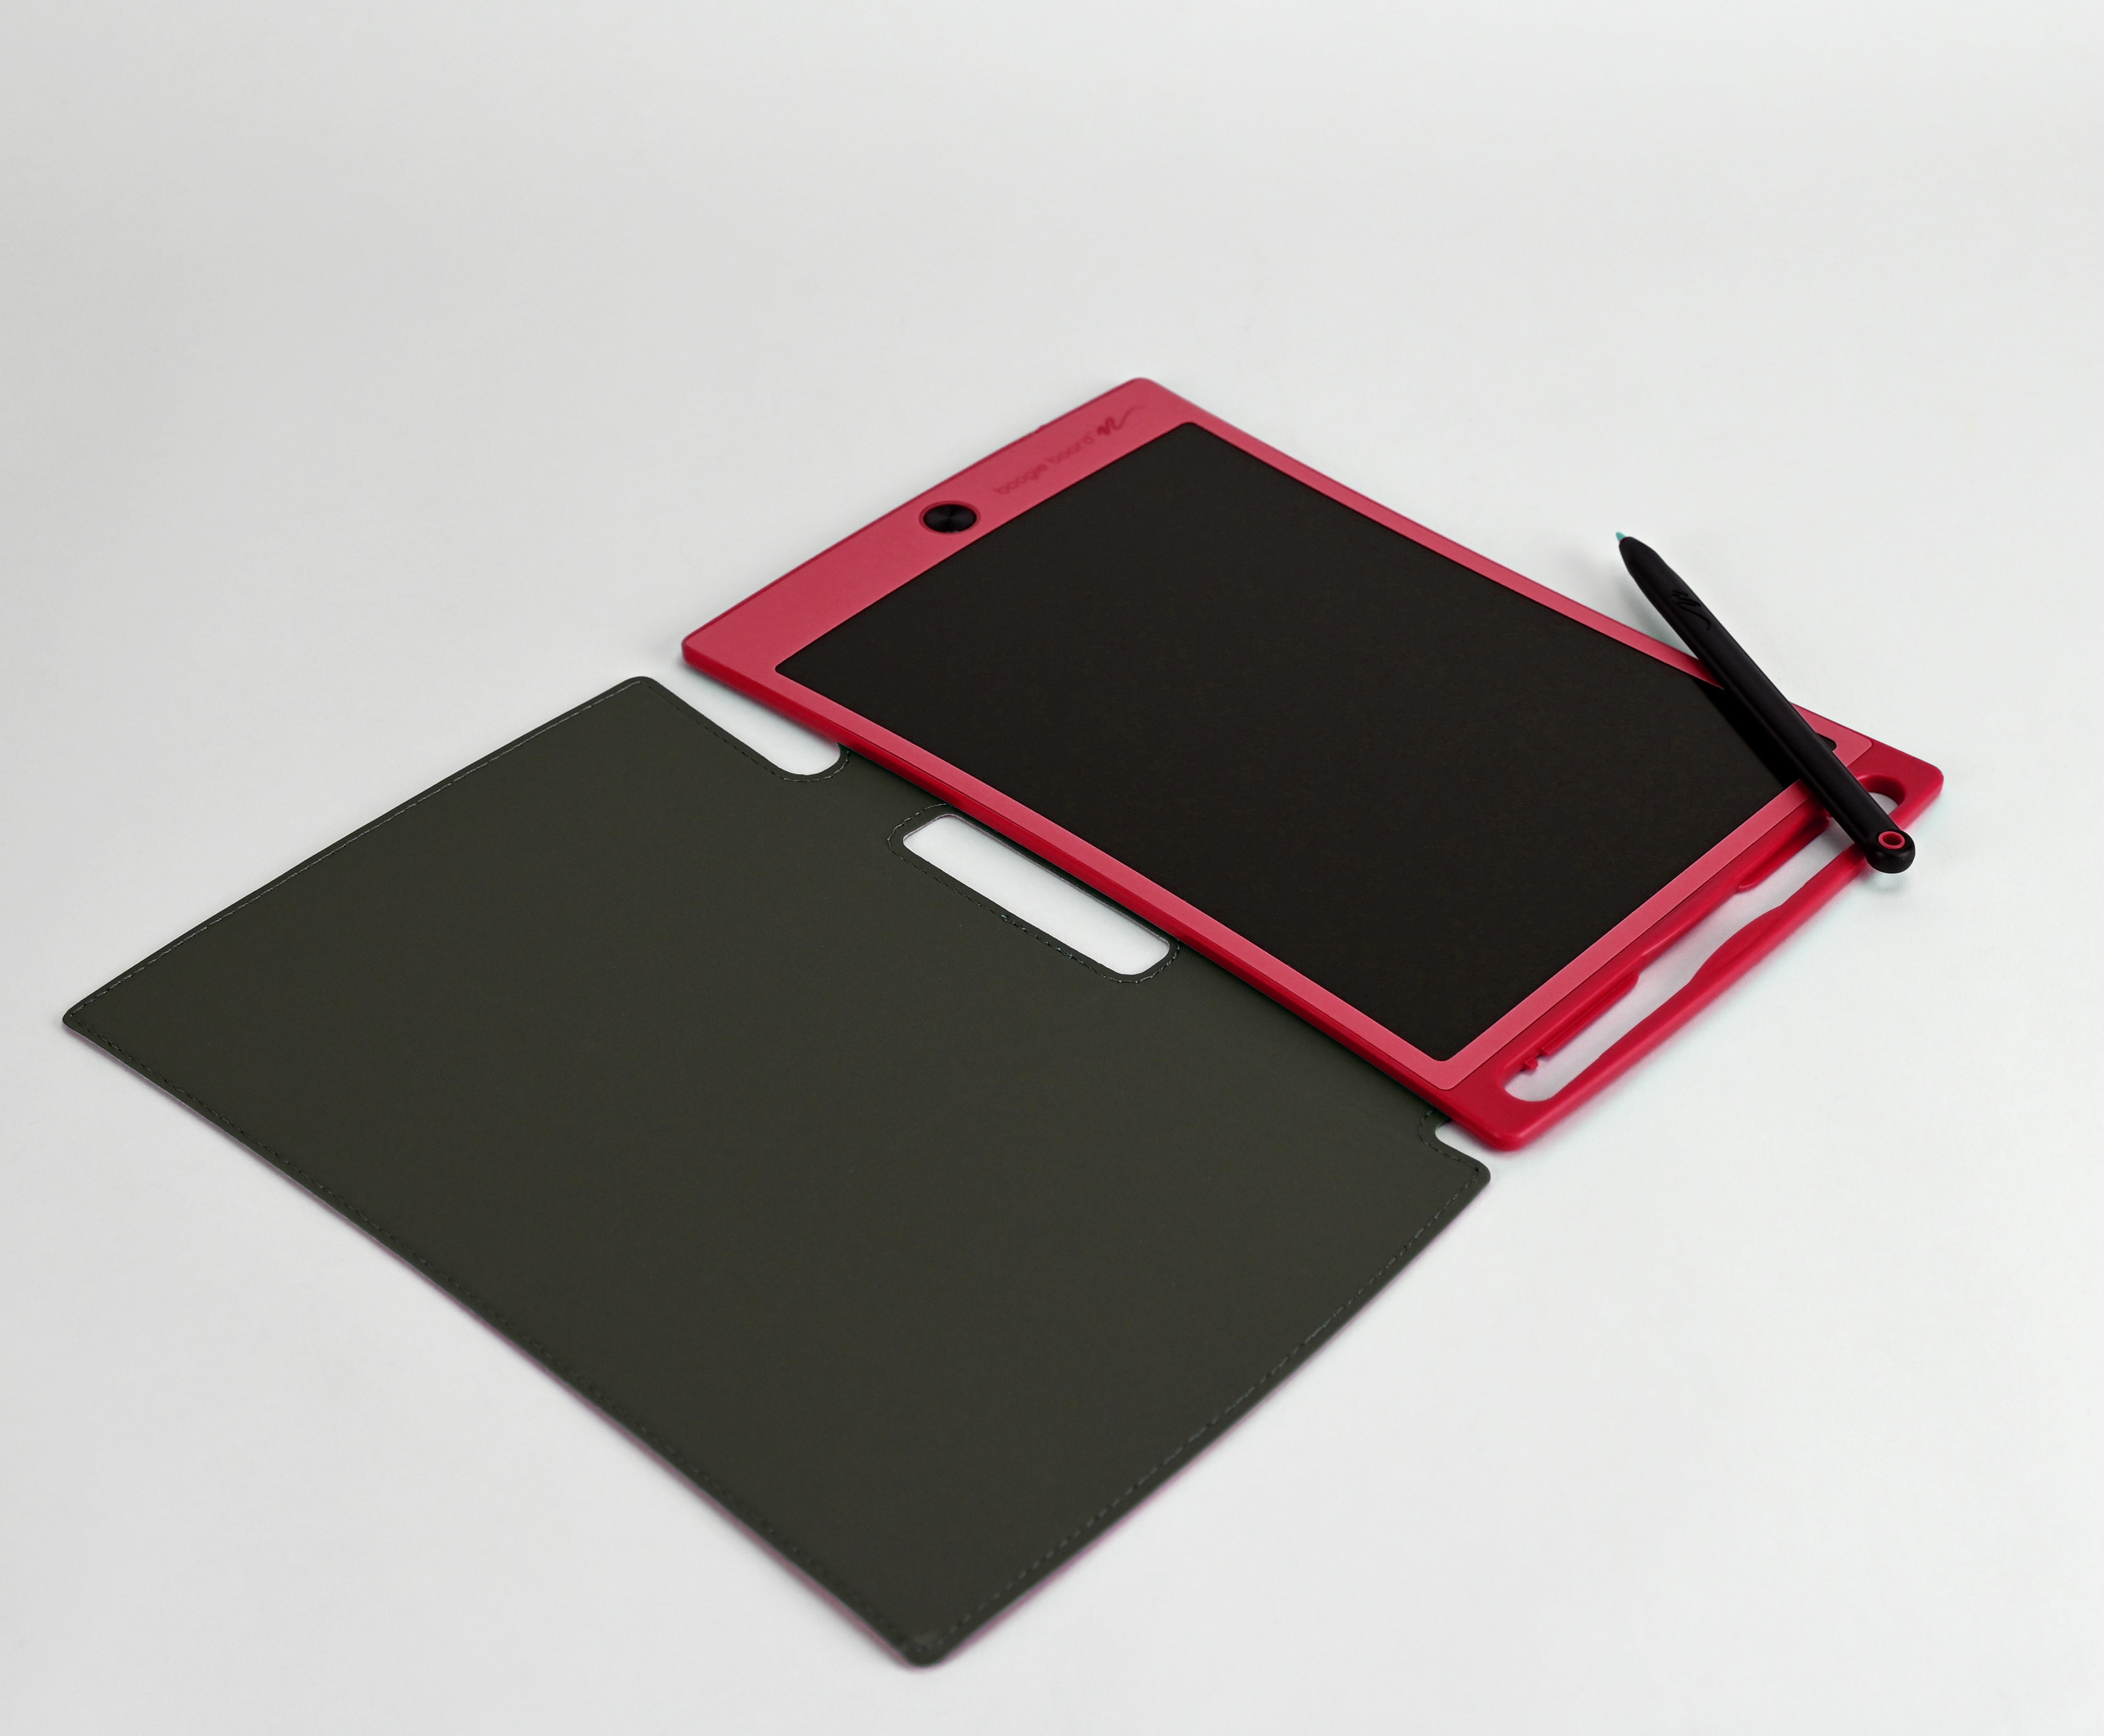  Cuaderno electrónico Jot 8.5 LCD de Boogie Board, de